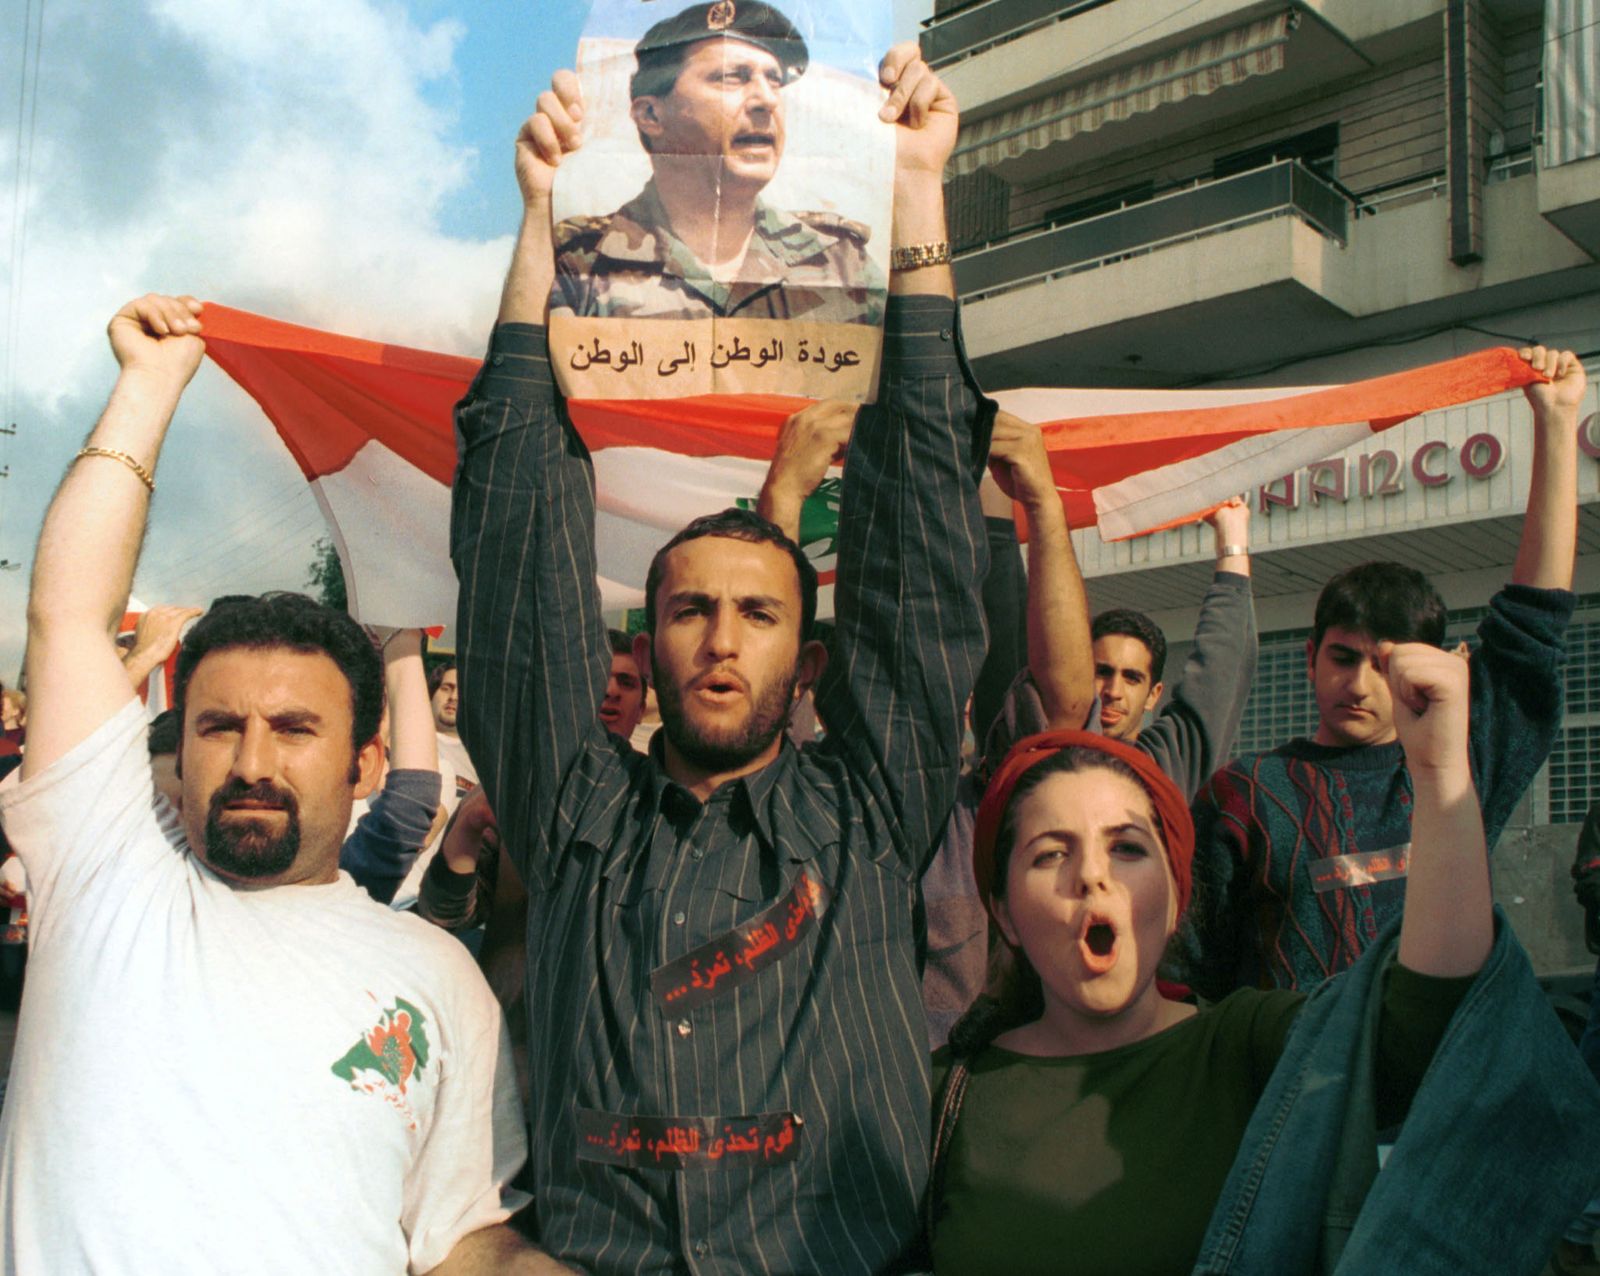 طلاب لبنانيون يرفعون صورة الجنرال ميشال عون المنفي في فرنسا خلال احتجاج في جامعة بيروت- 14 مارس 2001 - REUTERS